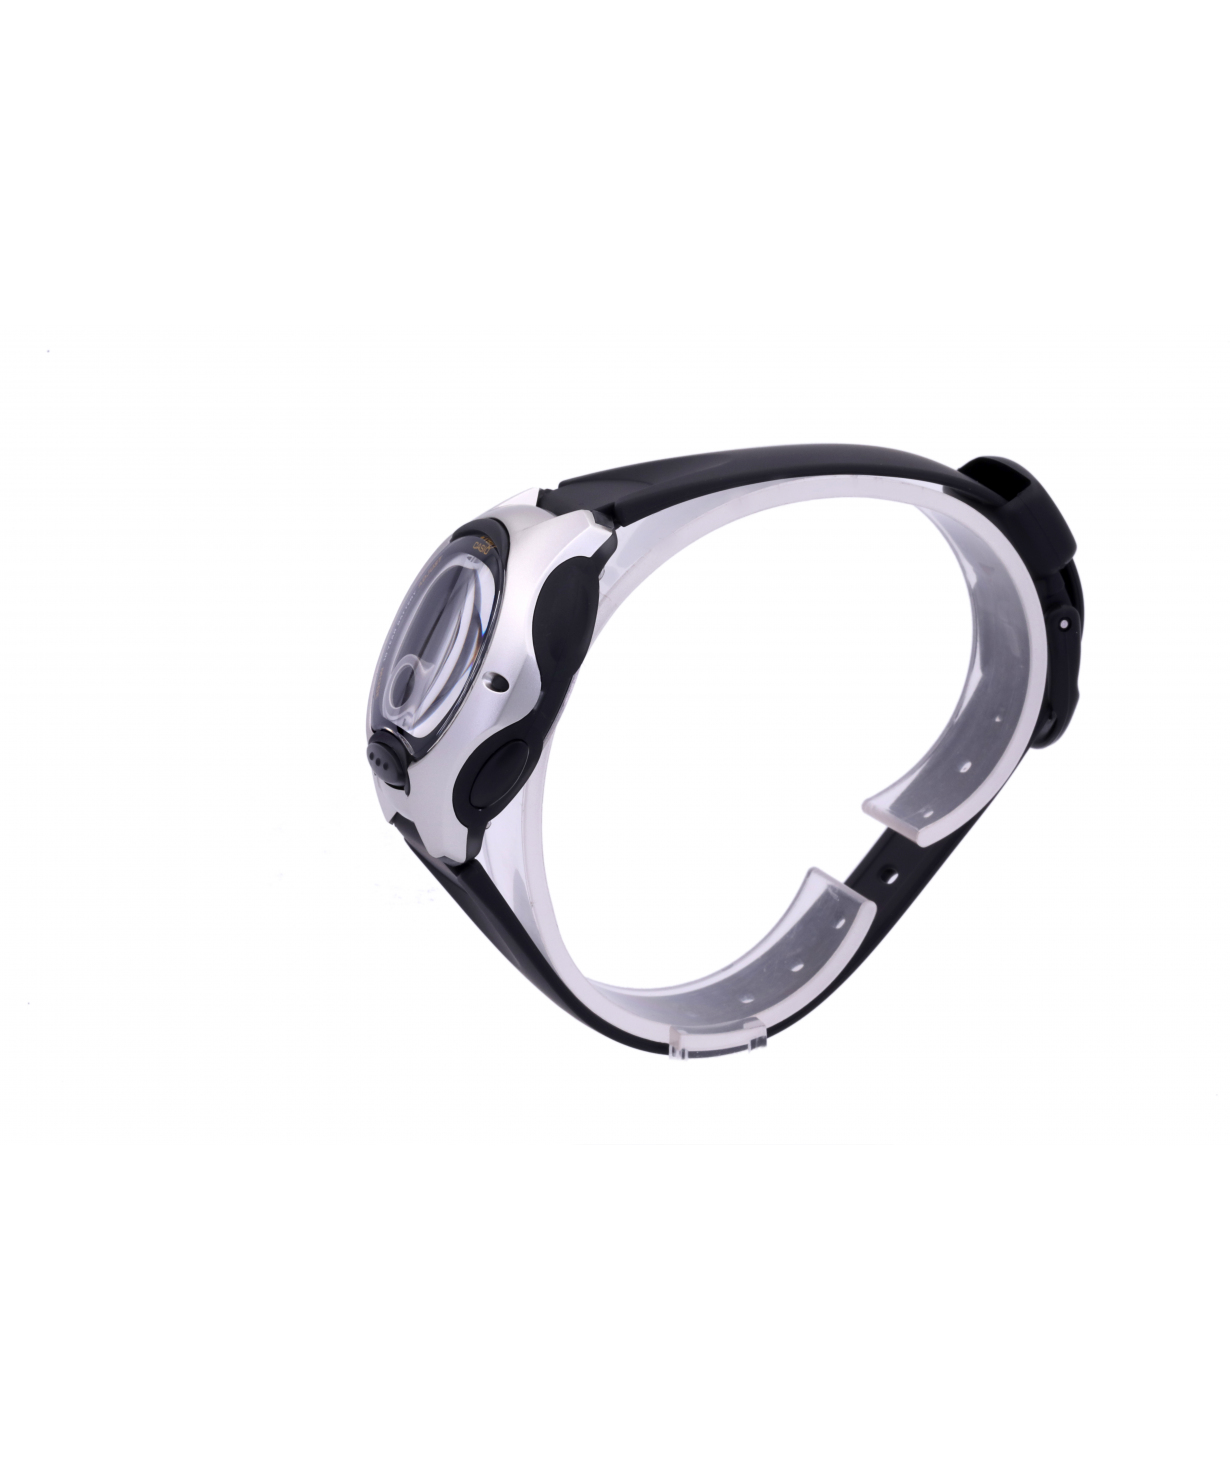 Wristwatch `Casio` LW-200-1AVDF